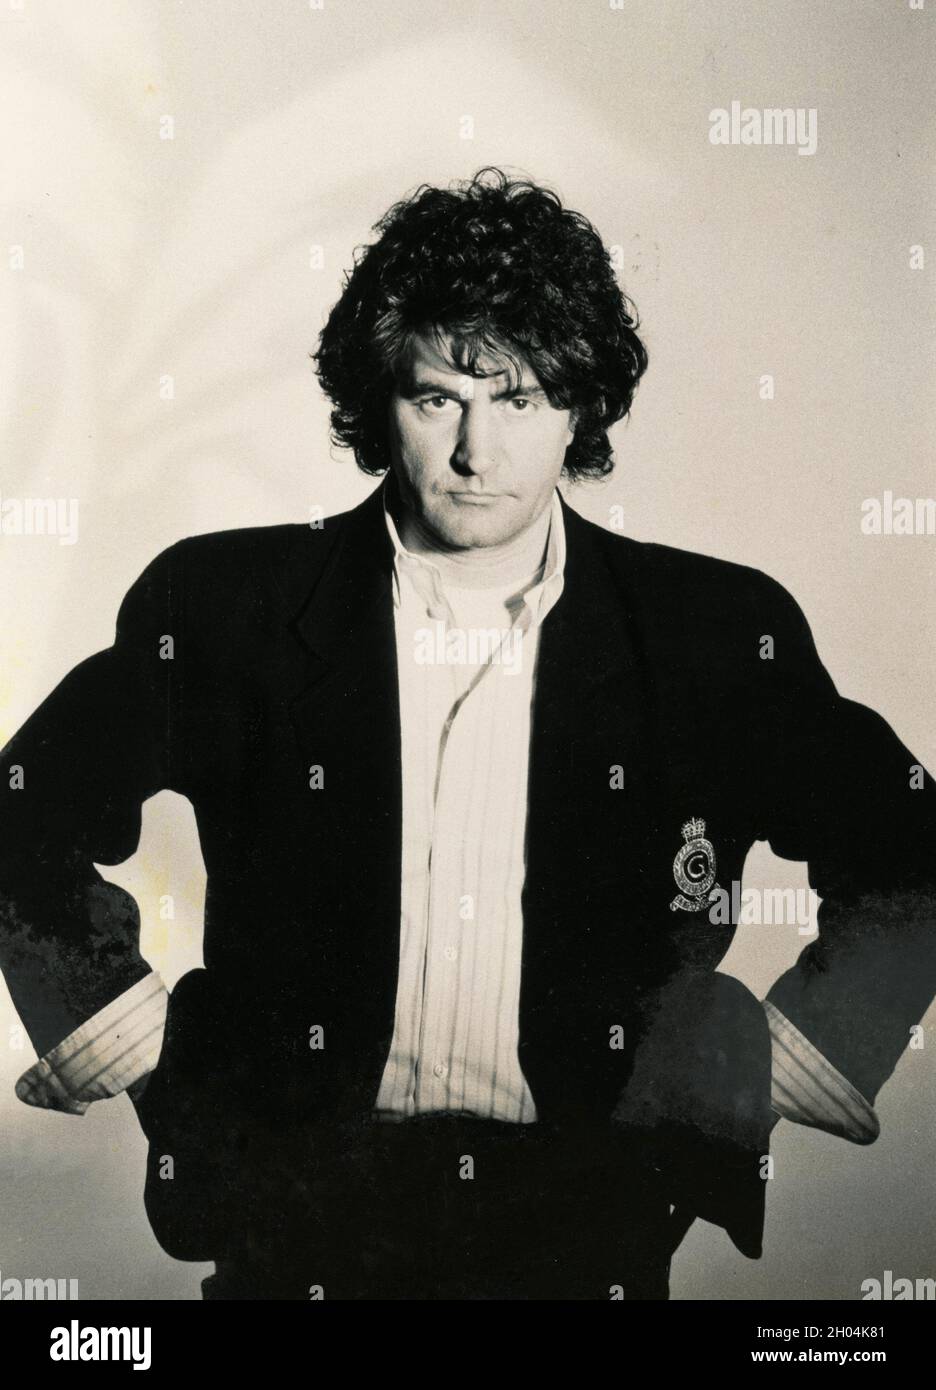 Fausto Leali, chanteur et compositeur italien, années 1980 Photo Stock -  Alamy